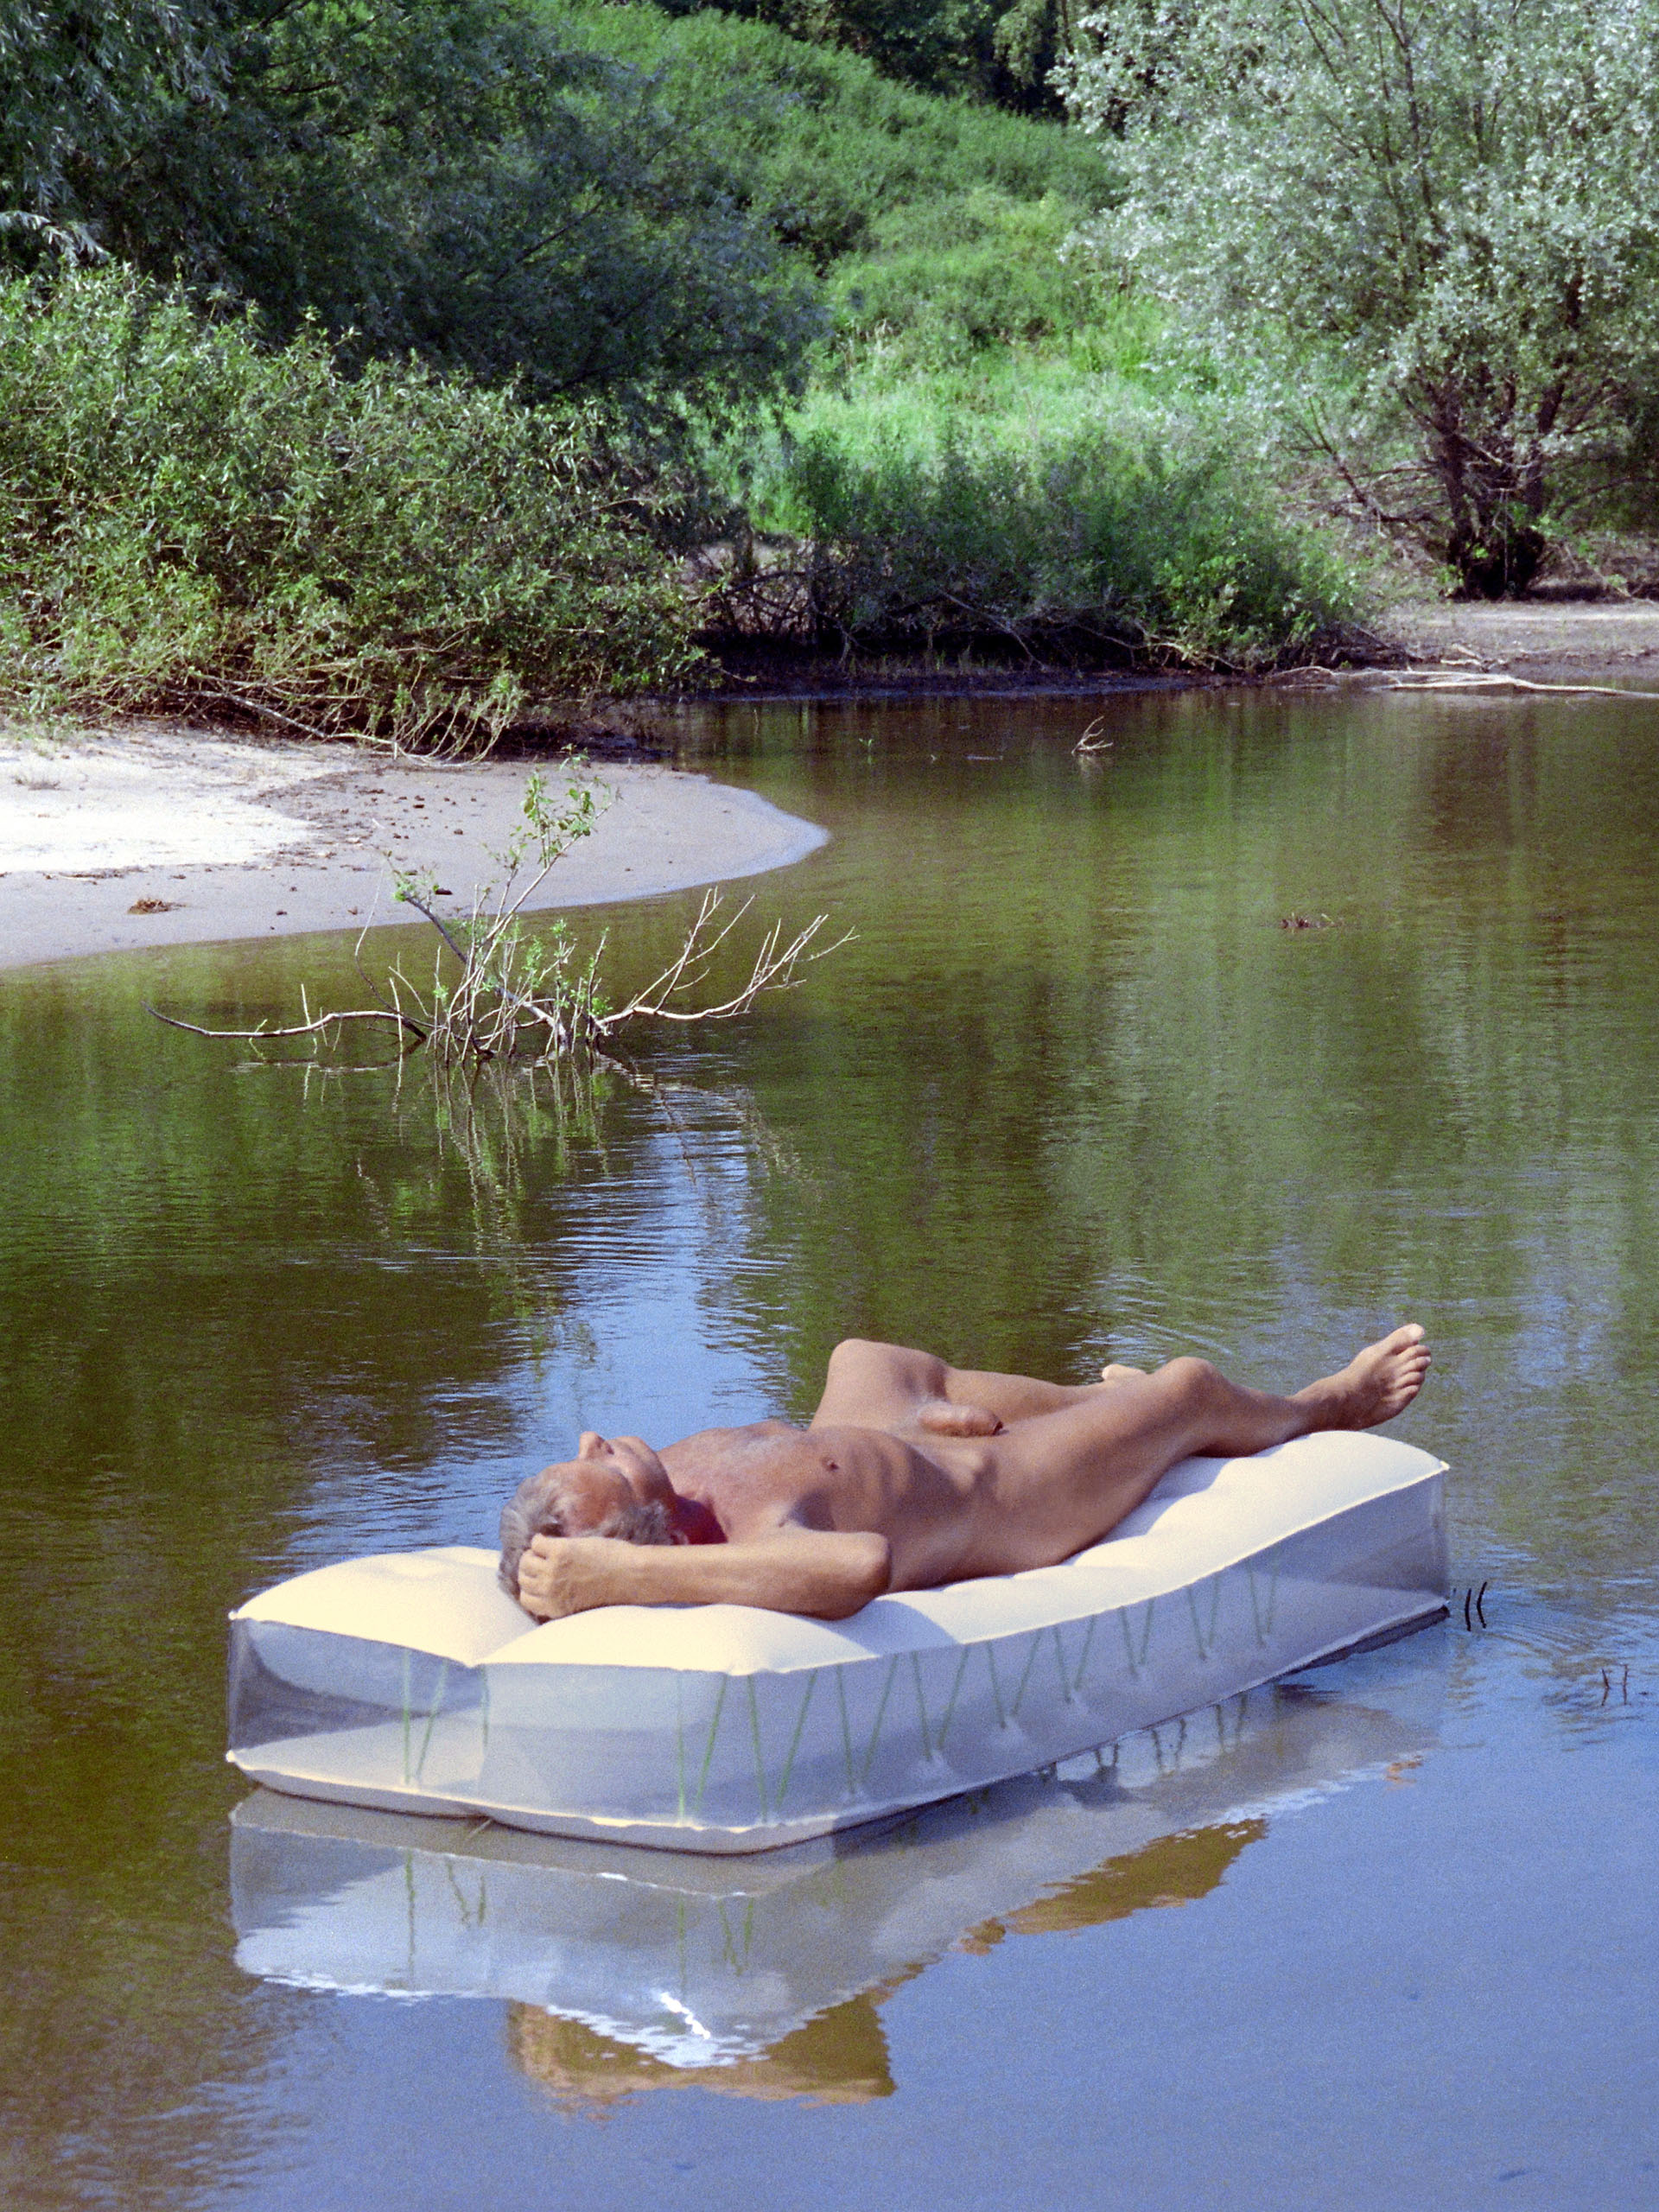 Nudism - nude bathing in the Elbe, naked man sunbathing